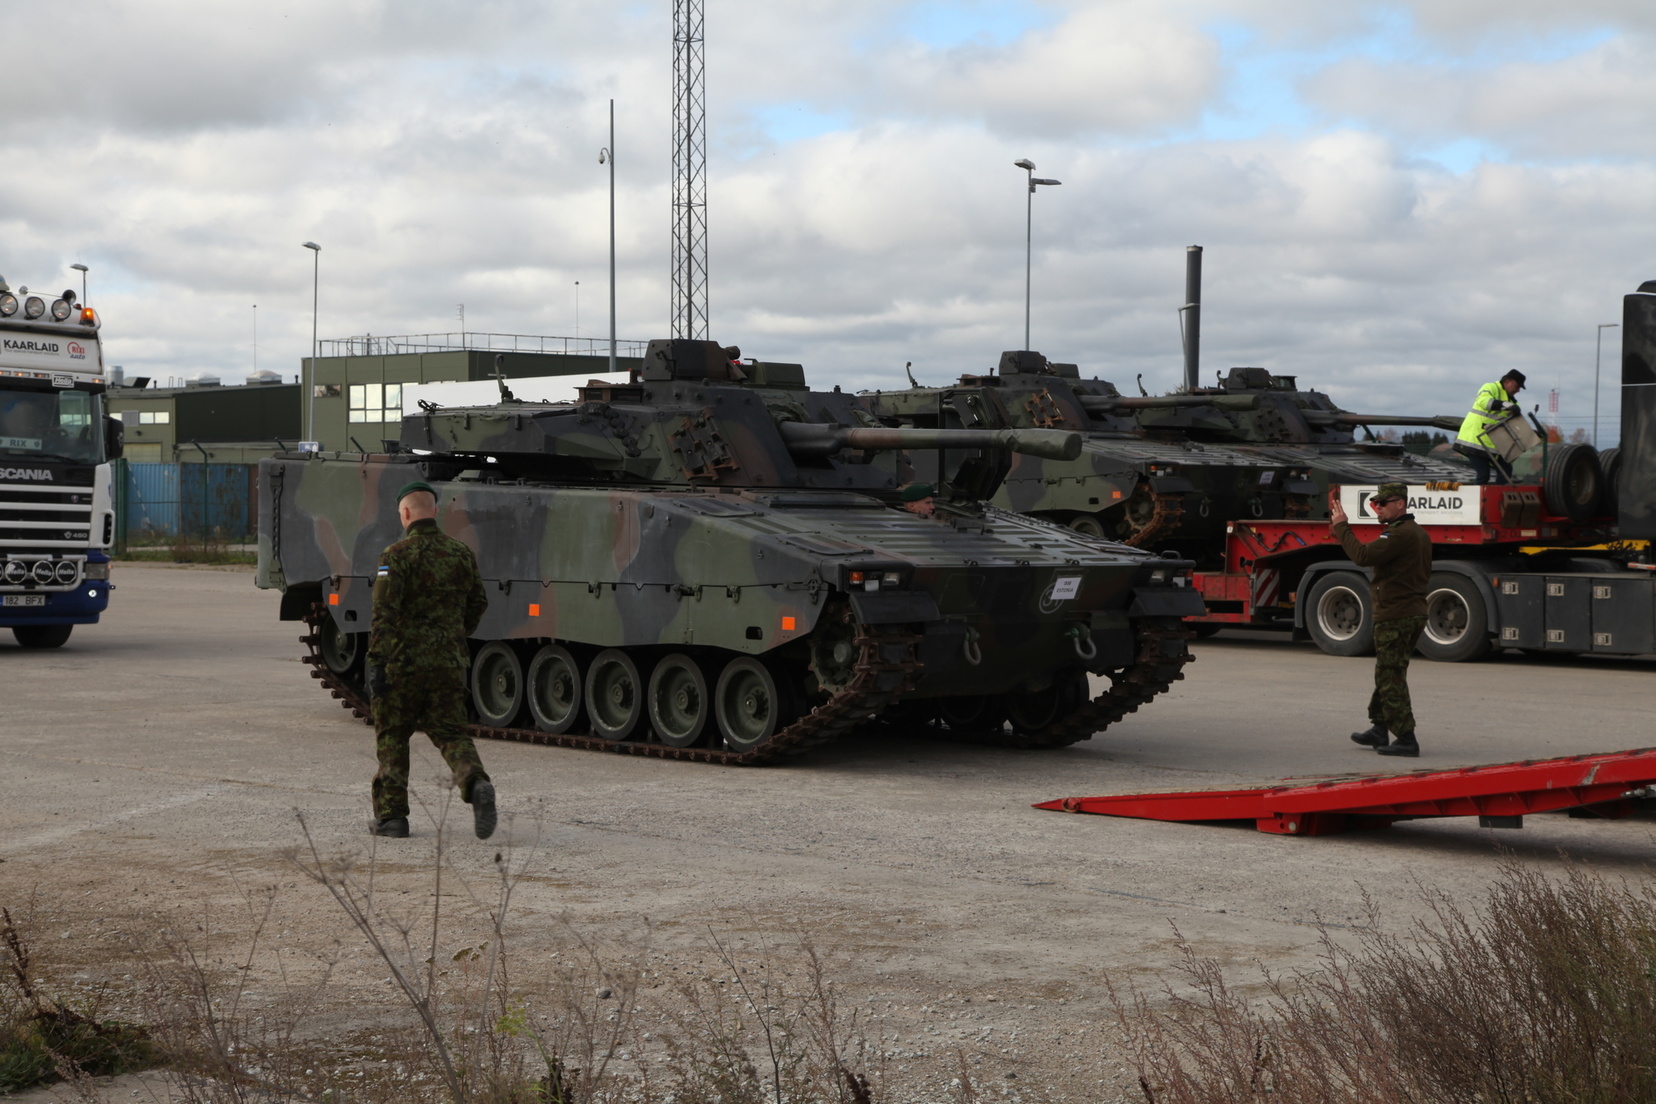 Bojowy wóz piechoty CV9035 w Tapa. /Fot. Eesti Kaitsevägi